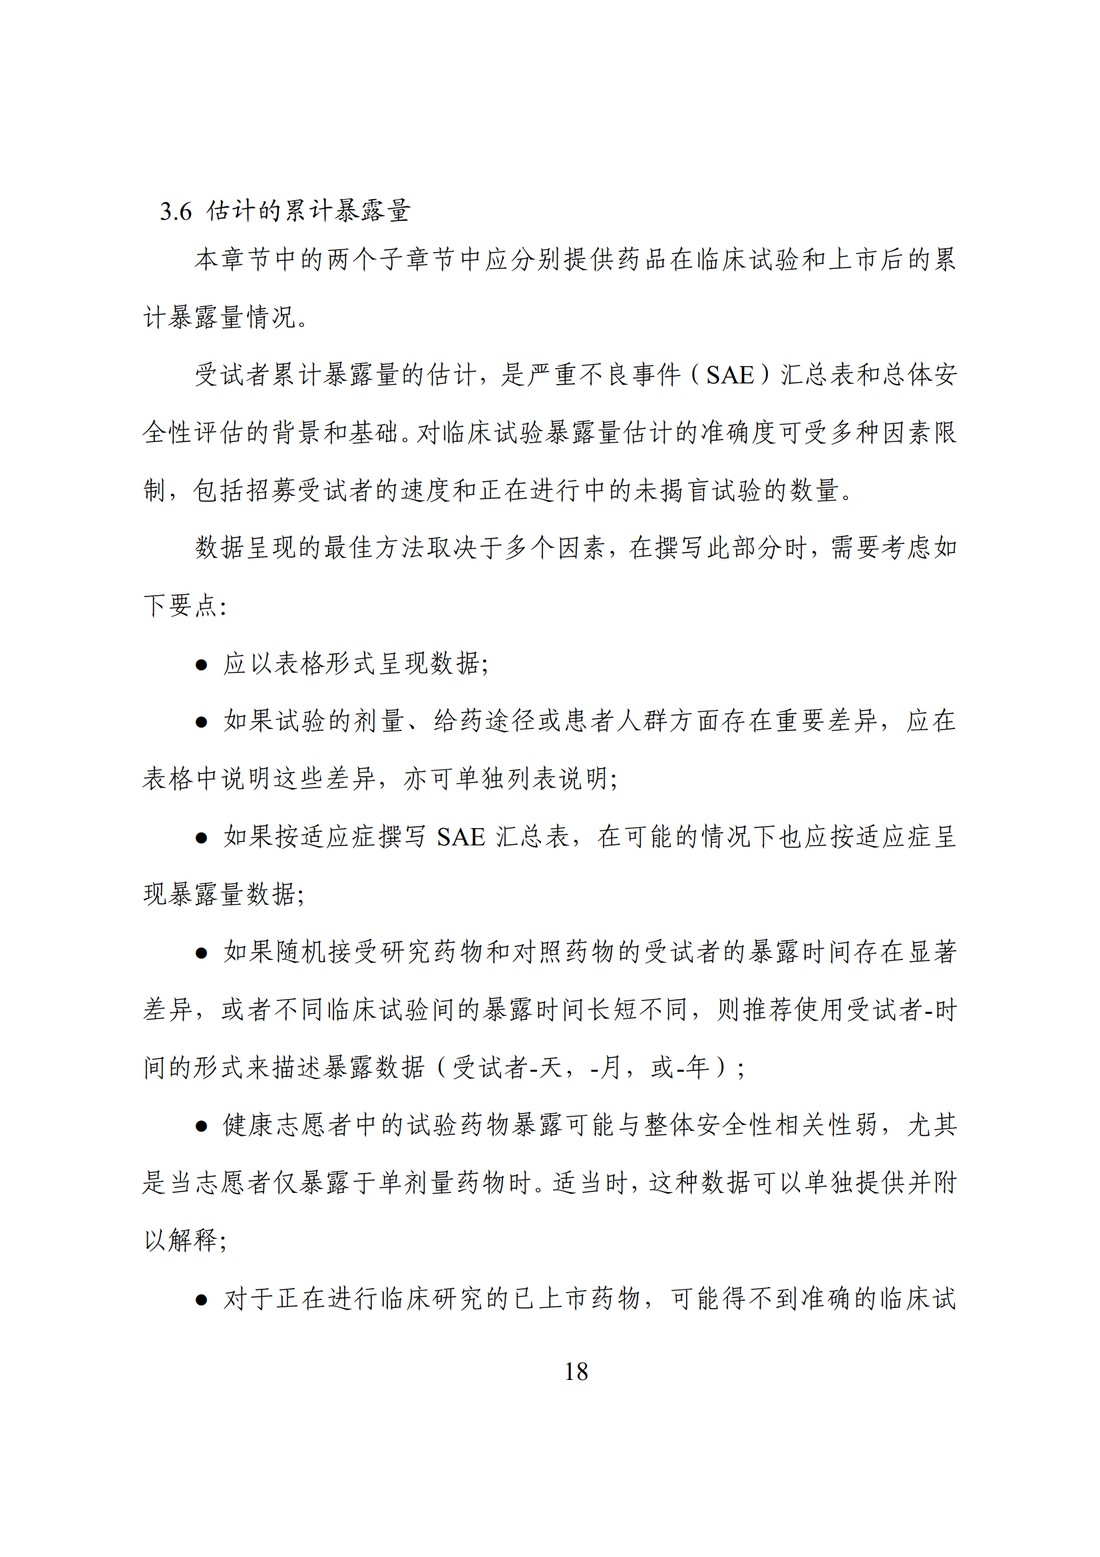 E2F 研发期间安全性更新报告(中文翻译公开征求意见稿)_23.jpg